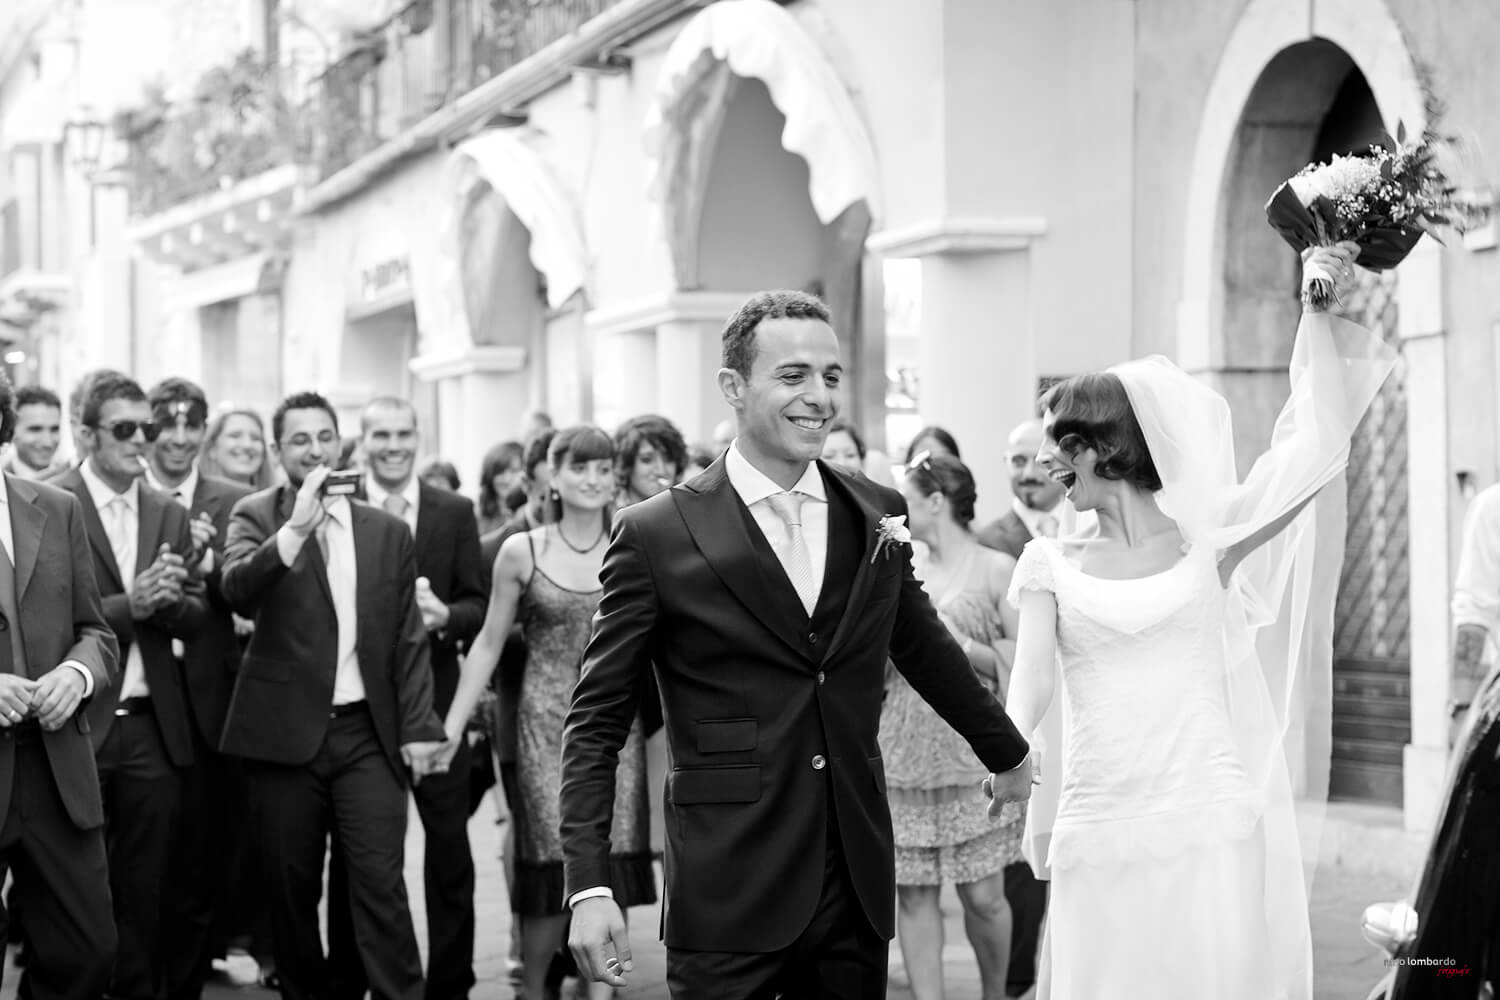 Sicilia fotograportage per i migliori matrimoni di destinazione a Taormina foto di Nino Lombardo